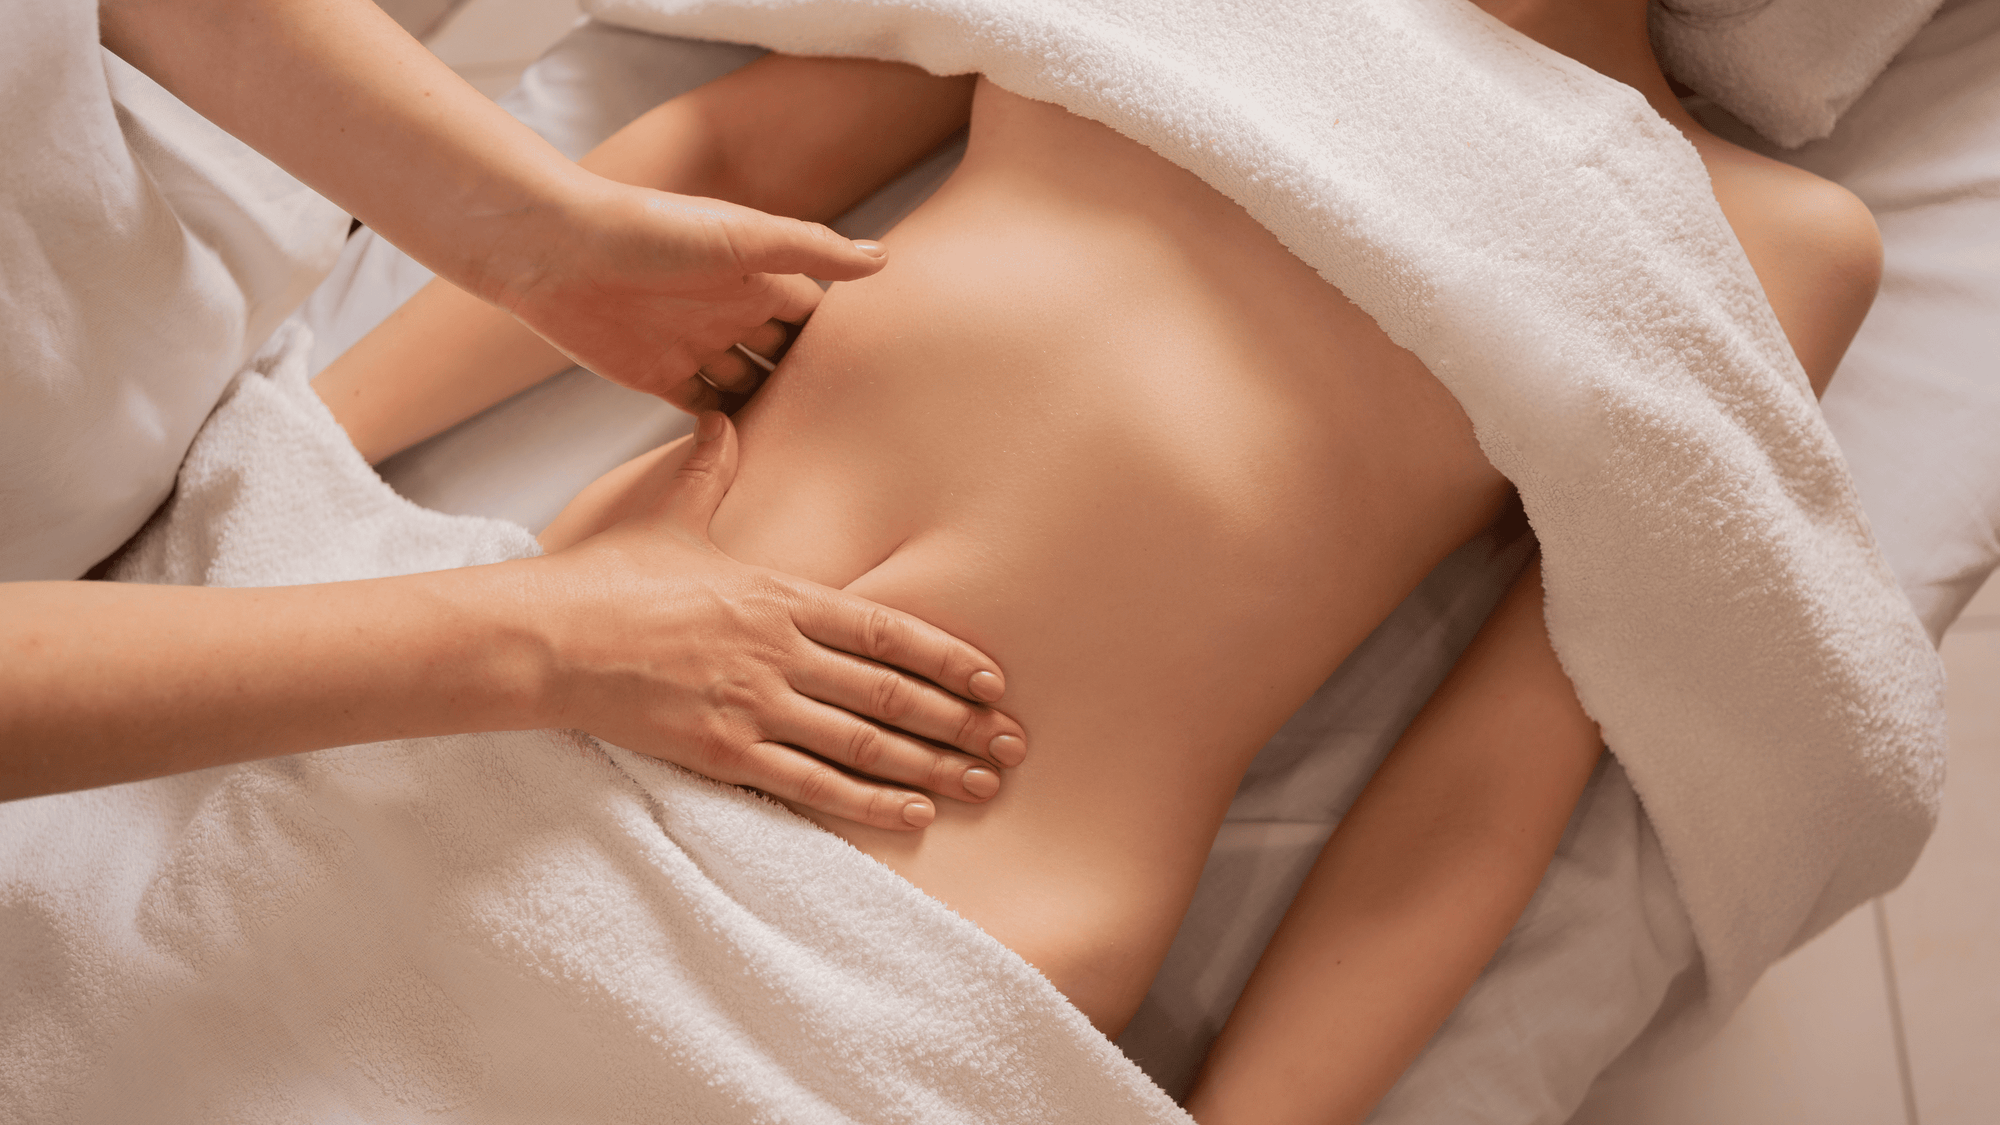 what is a nuru massage